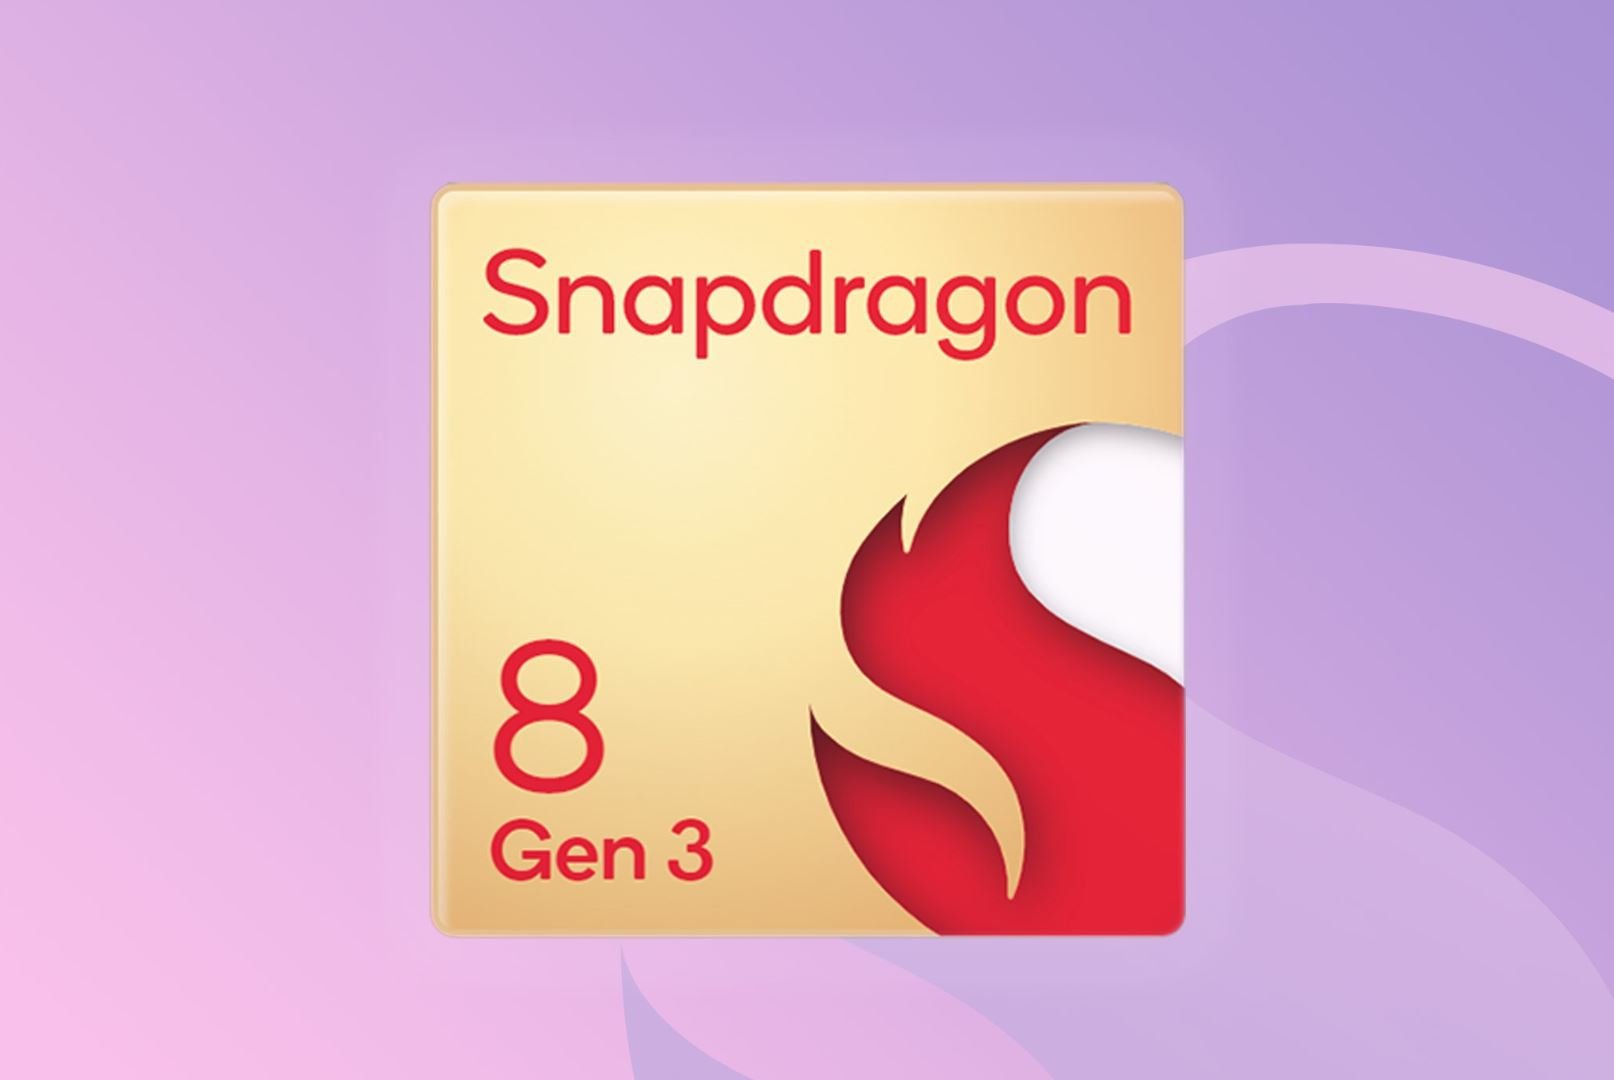 เผยข่าวลือแรกเกี่ยวกับรูปแบบและส่วนประกอบของ Snapdragon 8 Gen 3